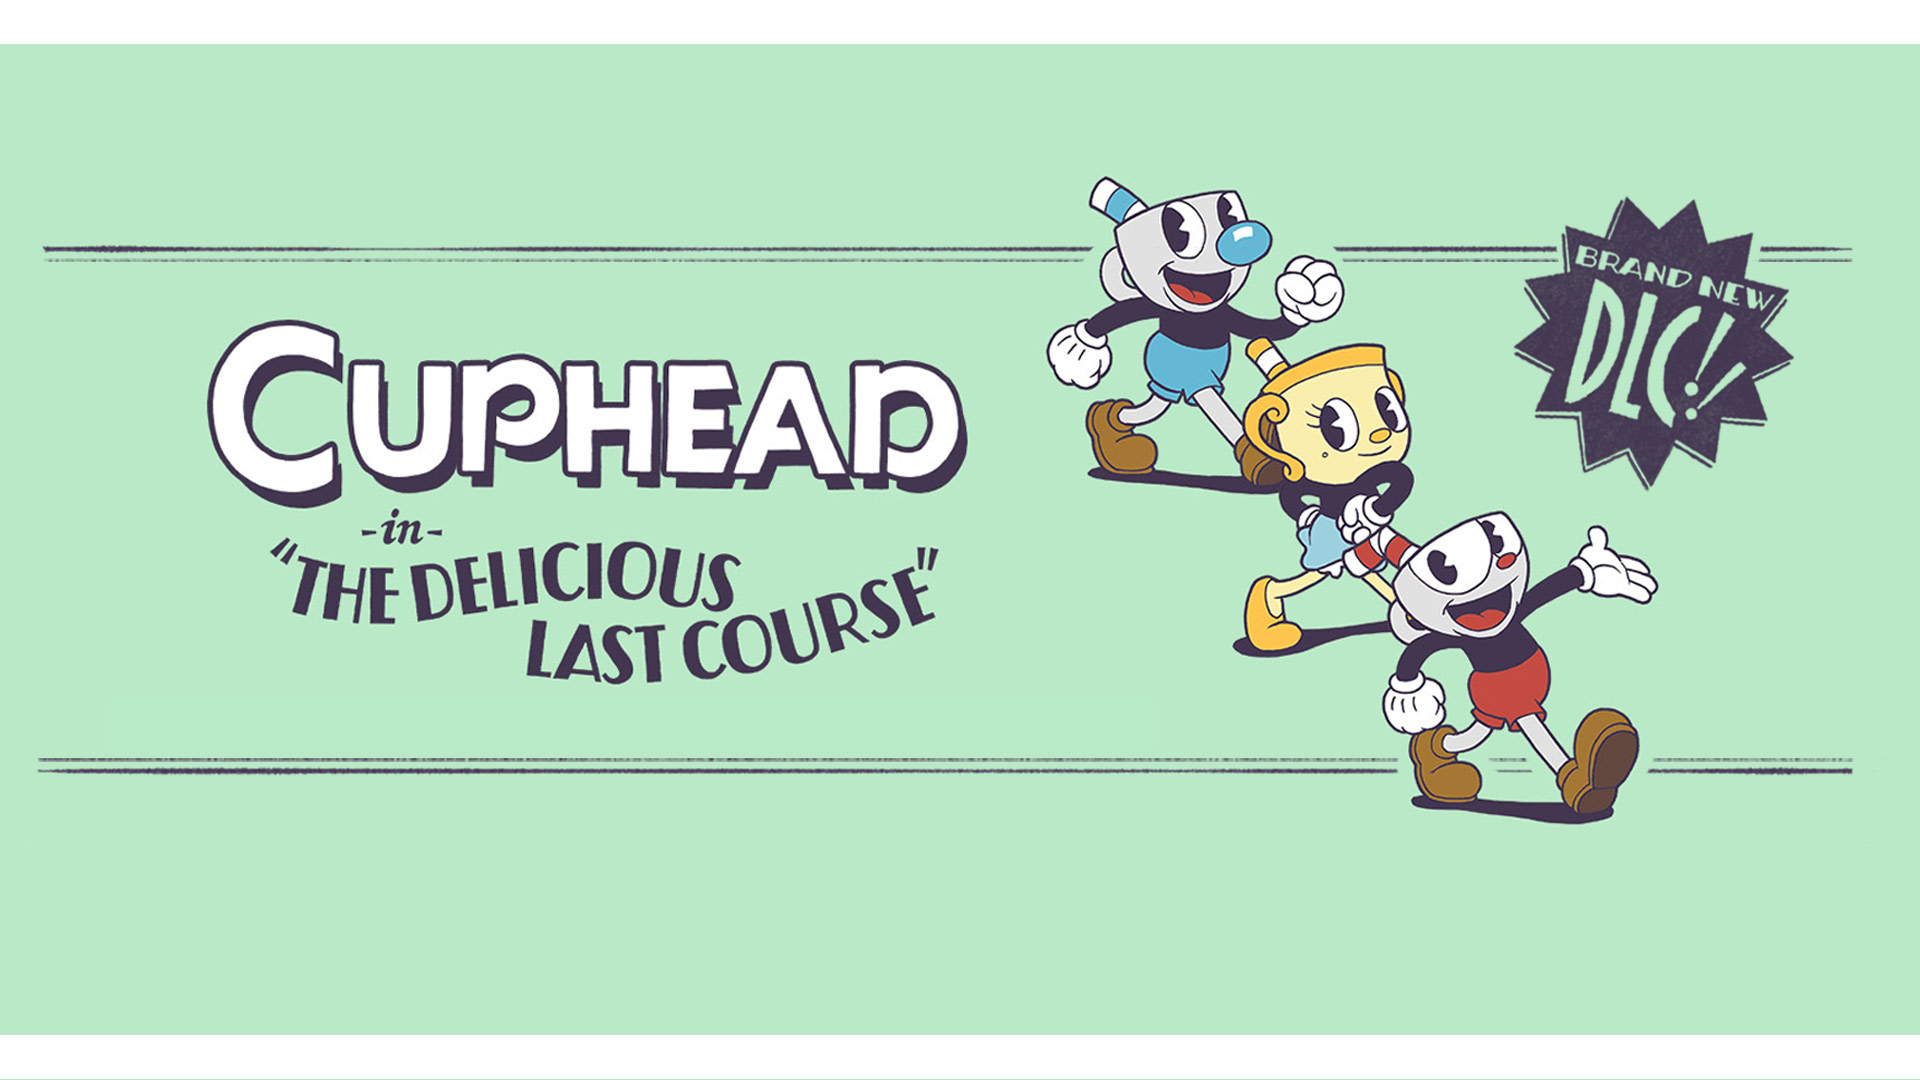 Cuphead dans The Delicious Last Course, le tout nouveau DLC !, 3 personnages de Cuphead prenant la pose